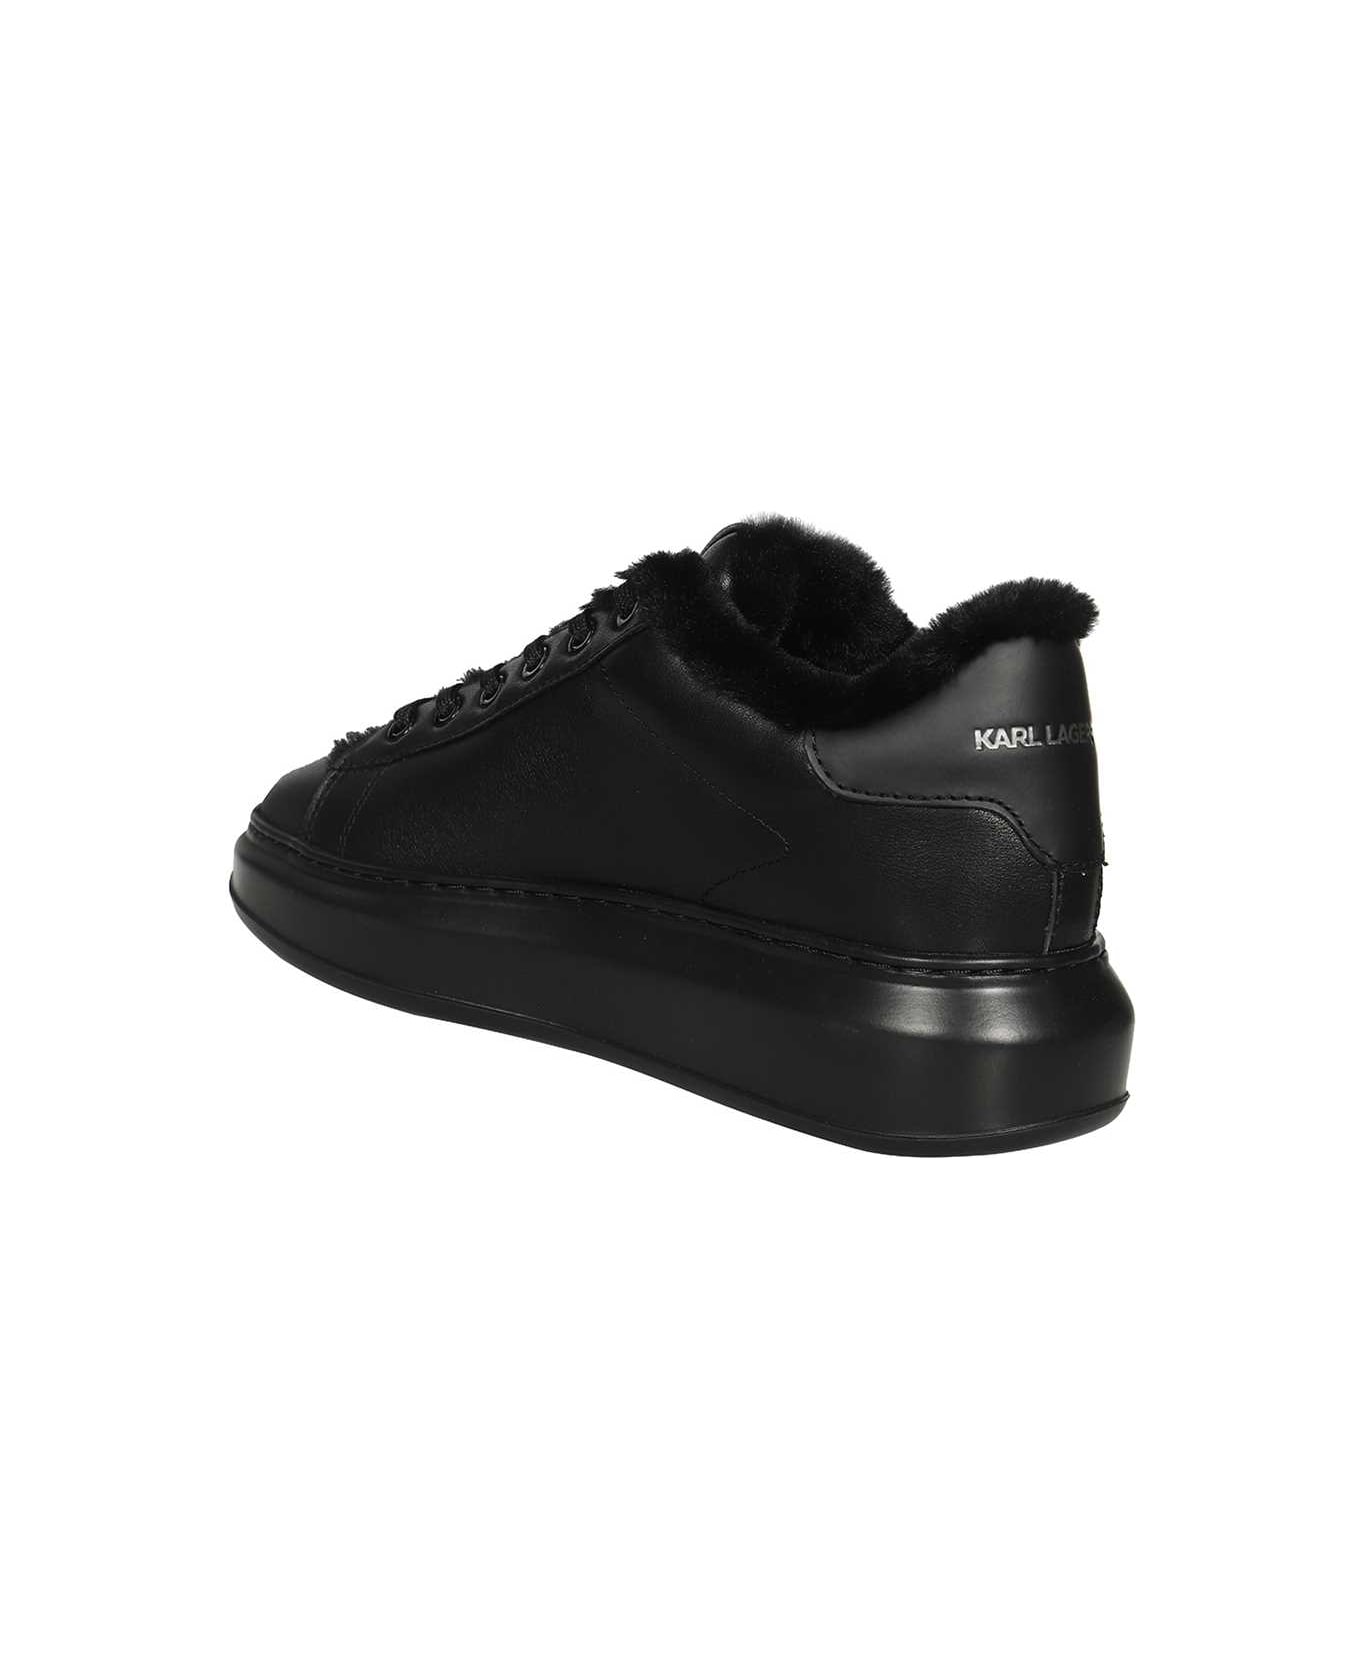 Karl Lagerfeld Low-top Sneakers - black スニーカー